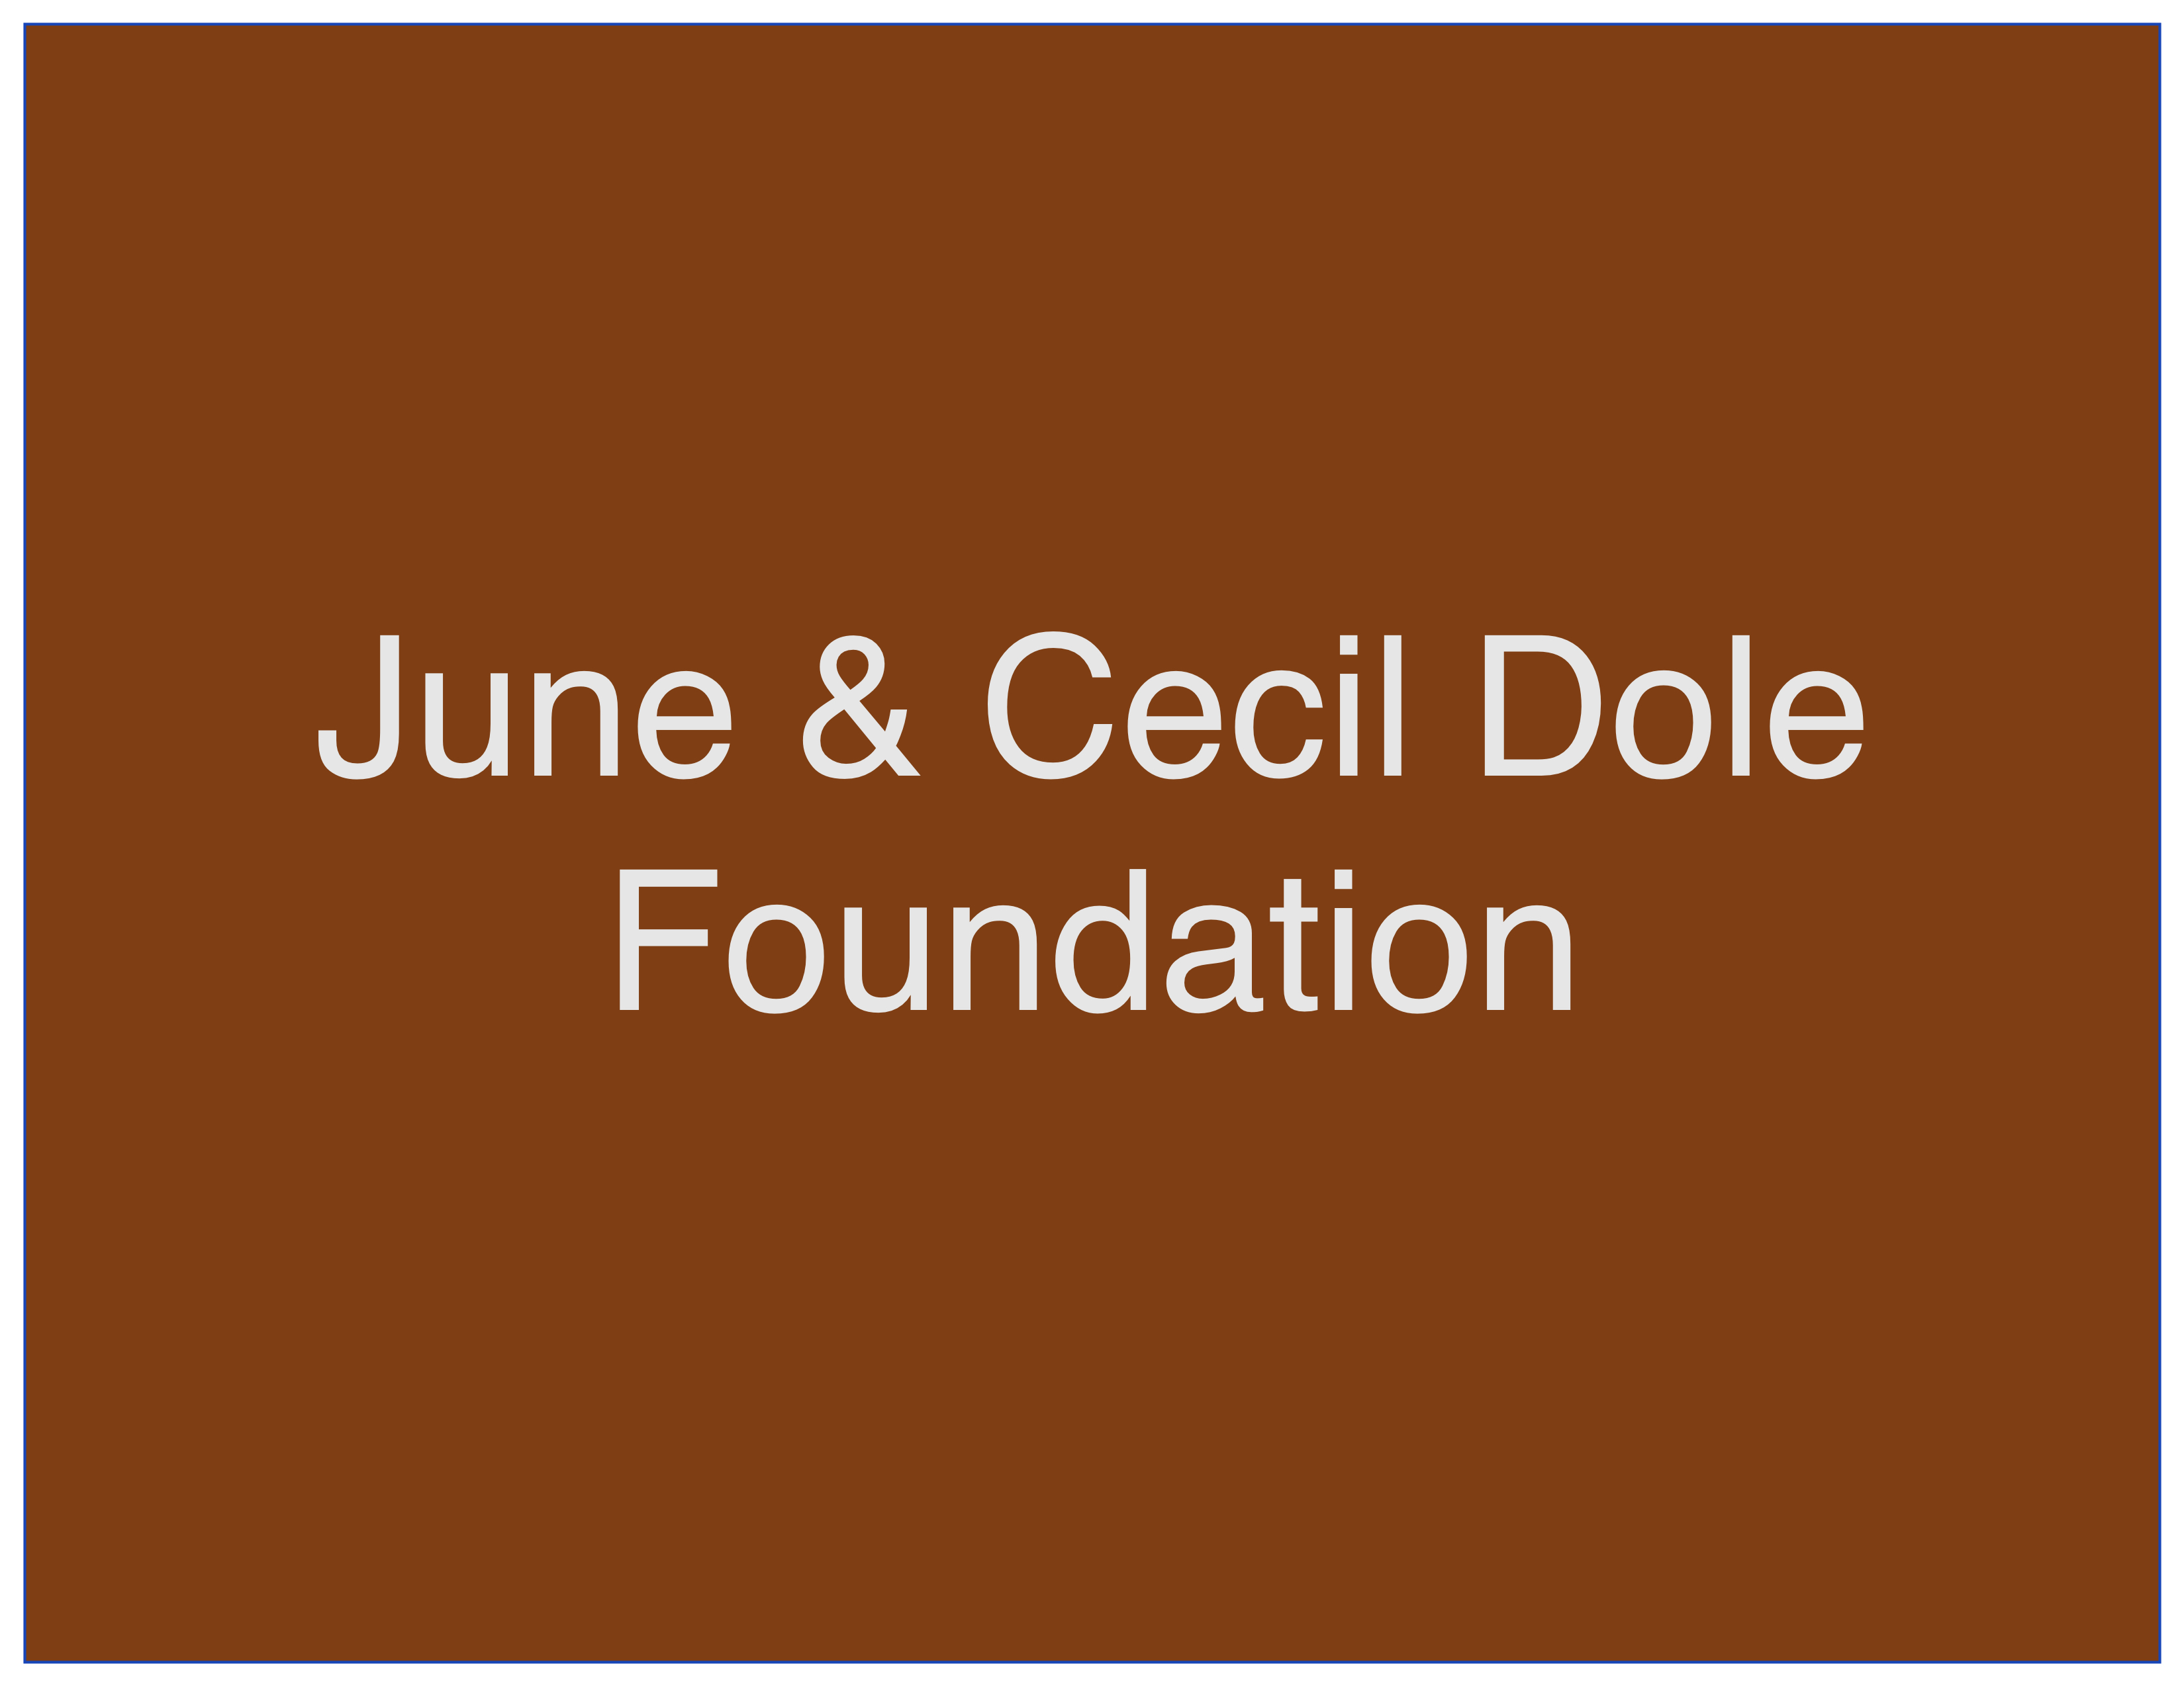 Jean & Cecil Dole Foundation